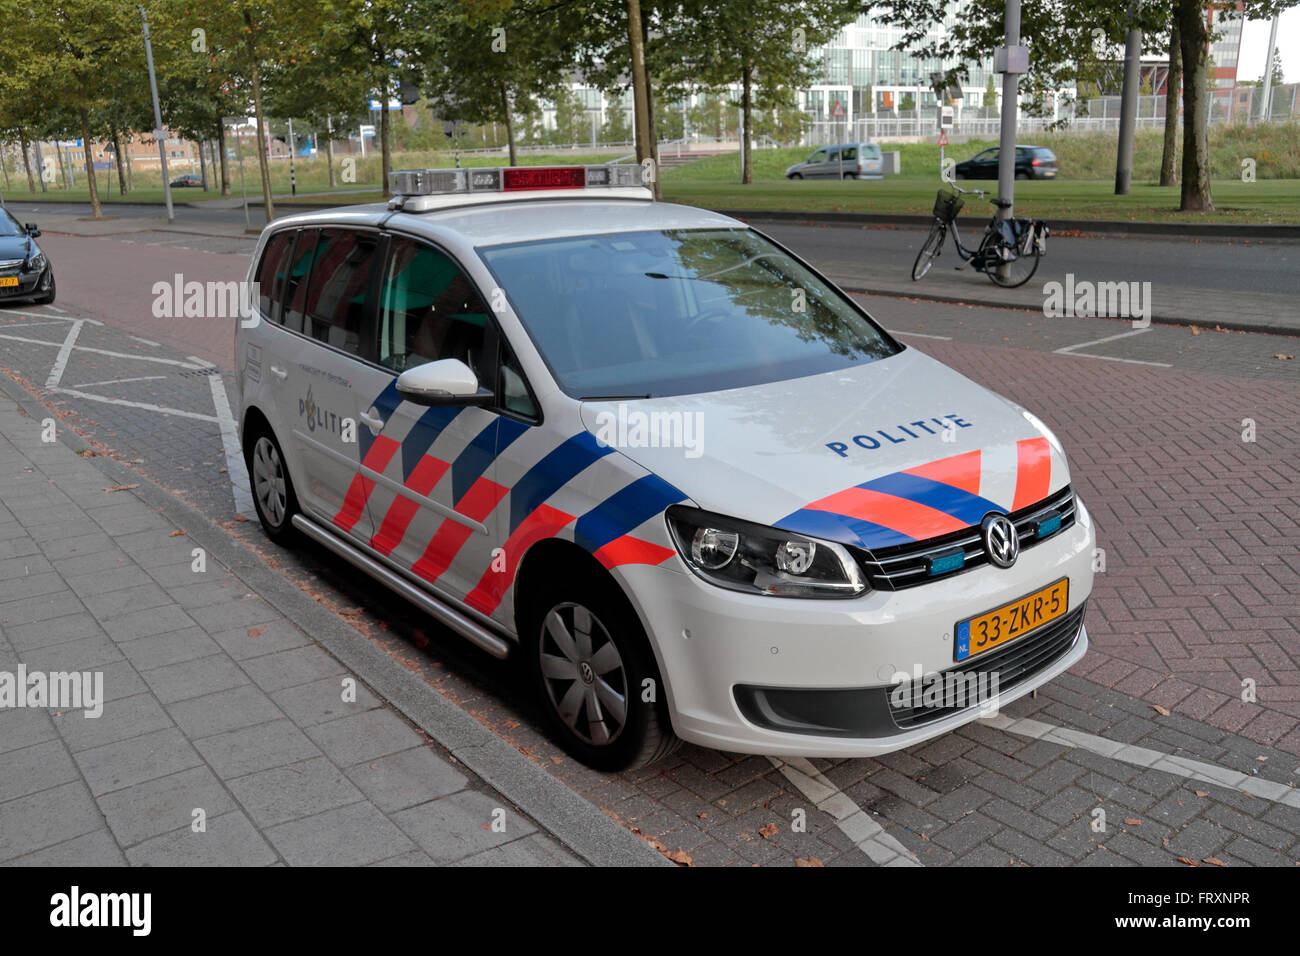 Polizei Niederlande:Armabzeichen mit National und The Netherlands